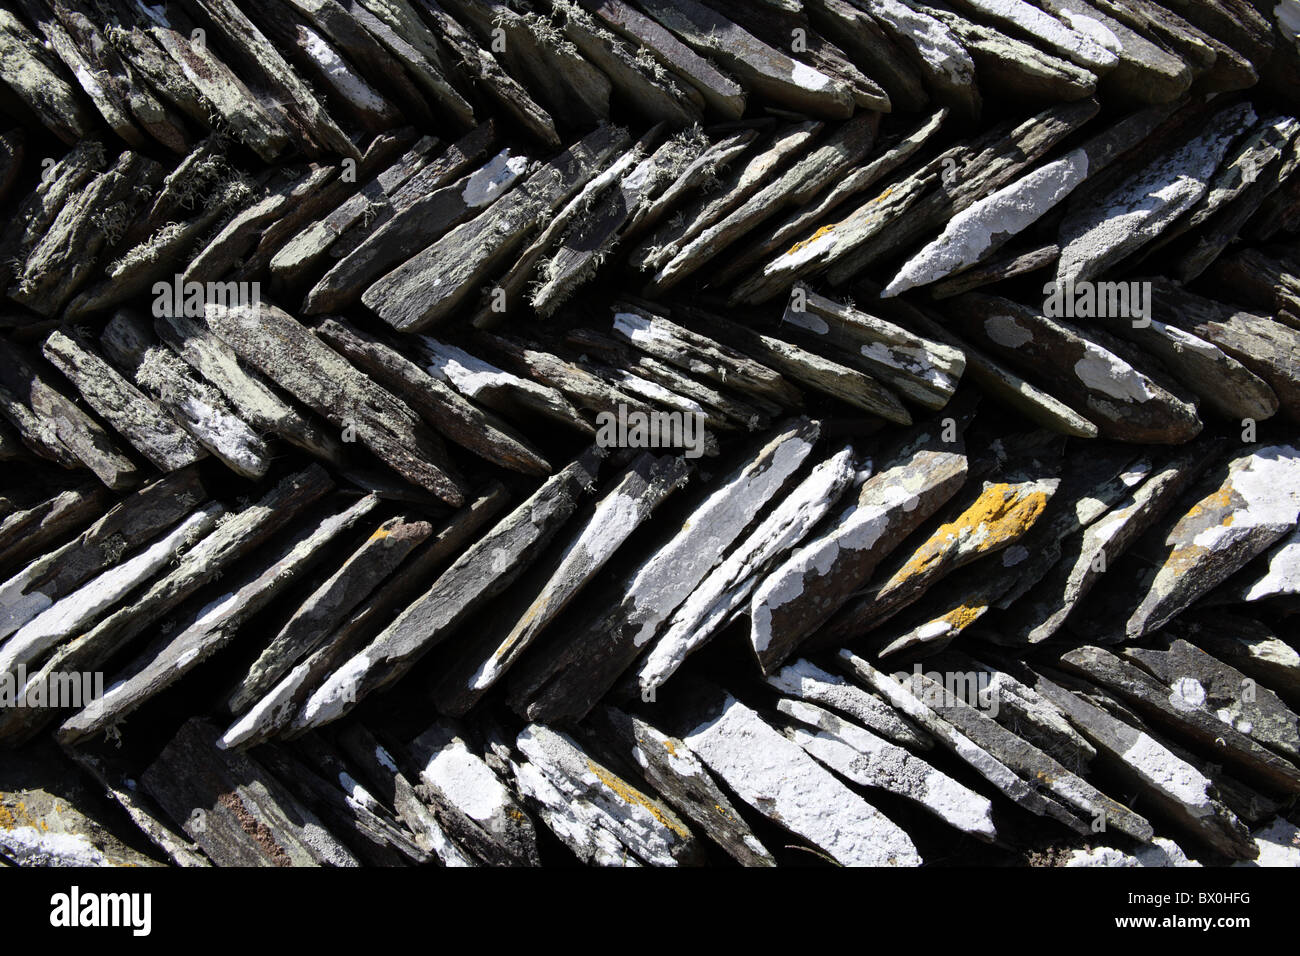 Cubiertos de musgos y líquenes espiguilla bancales de piedra seca cerca de Tintagel, Cornwall Foto de stock